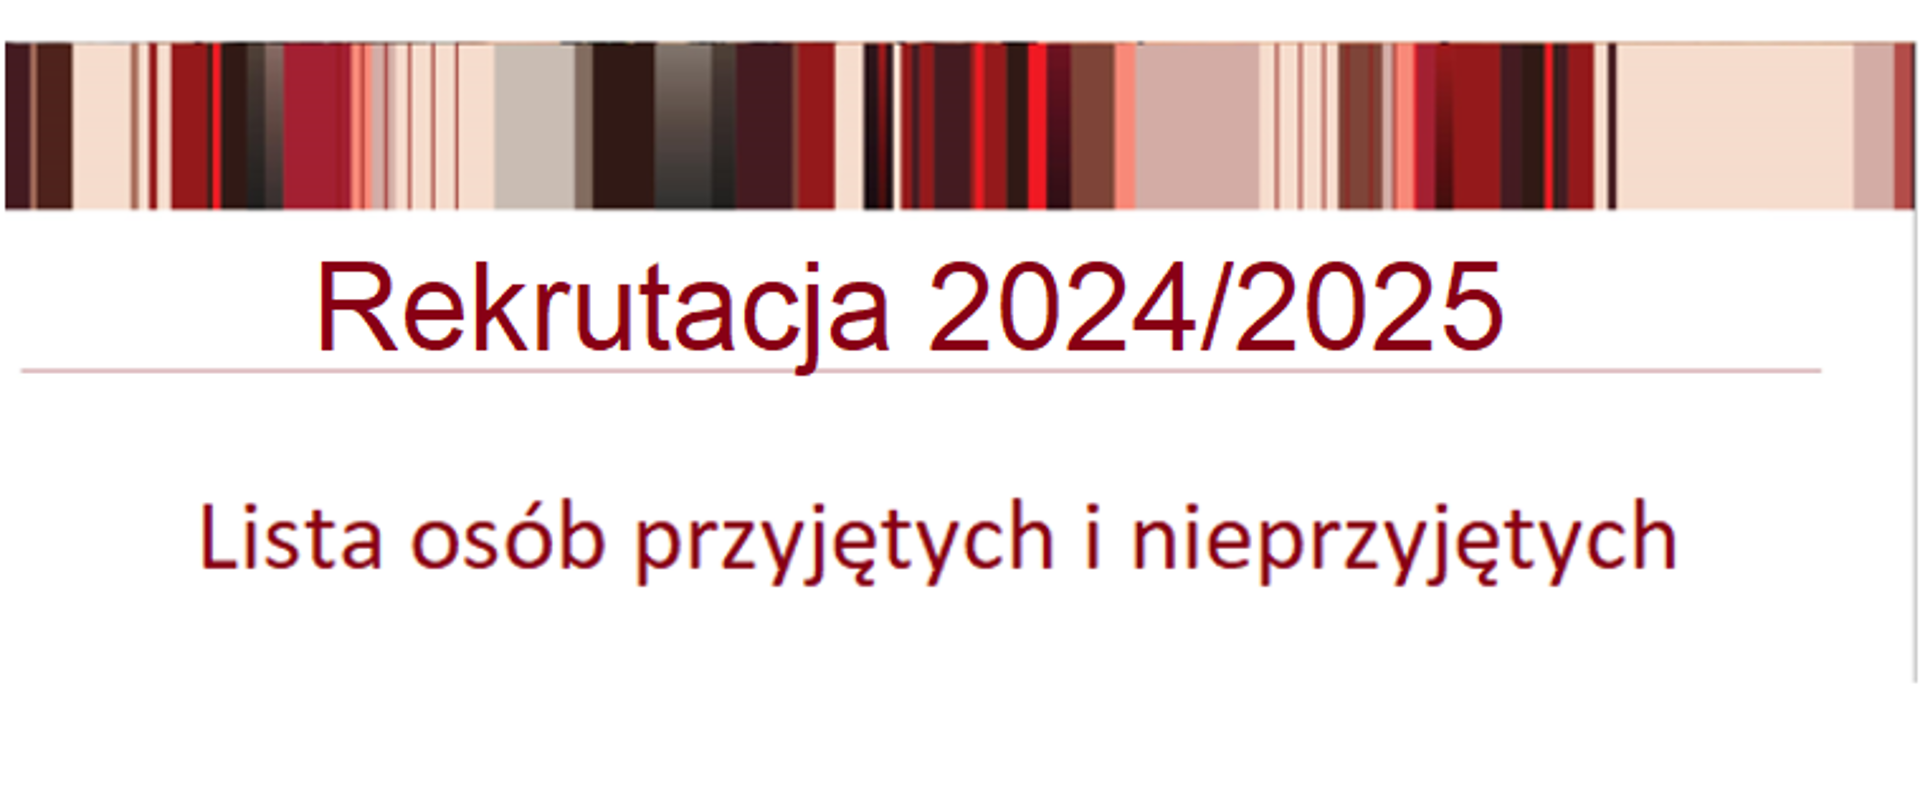 Lista osób przyjętych i nieprzyjętych 2024/2025